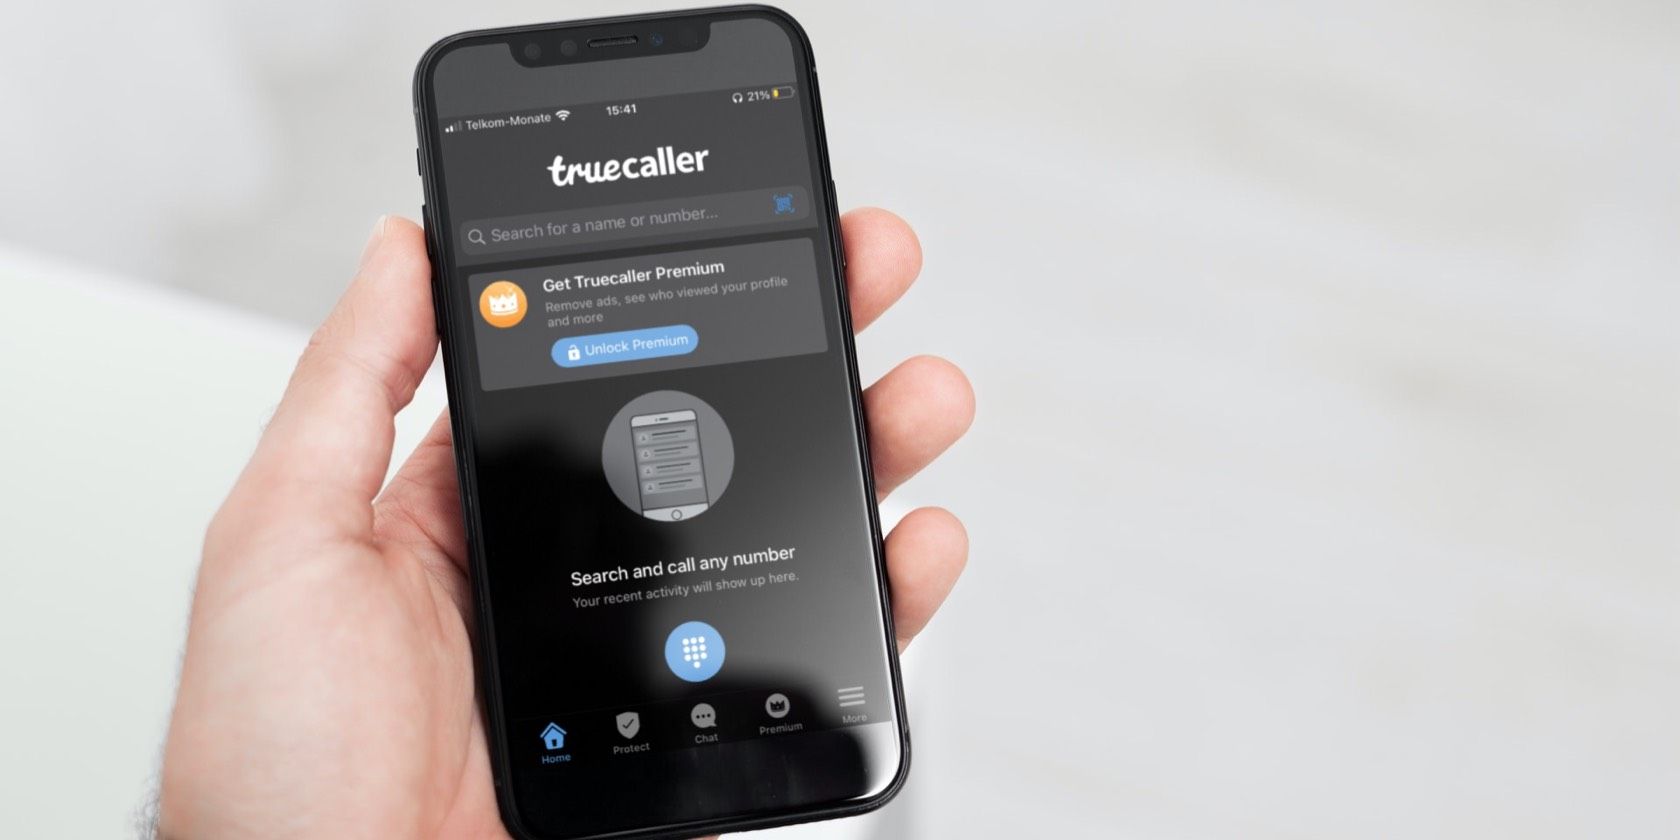 download truecaller app for samsung